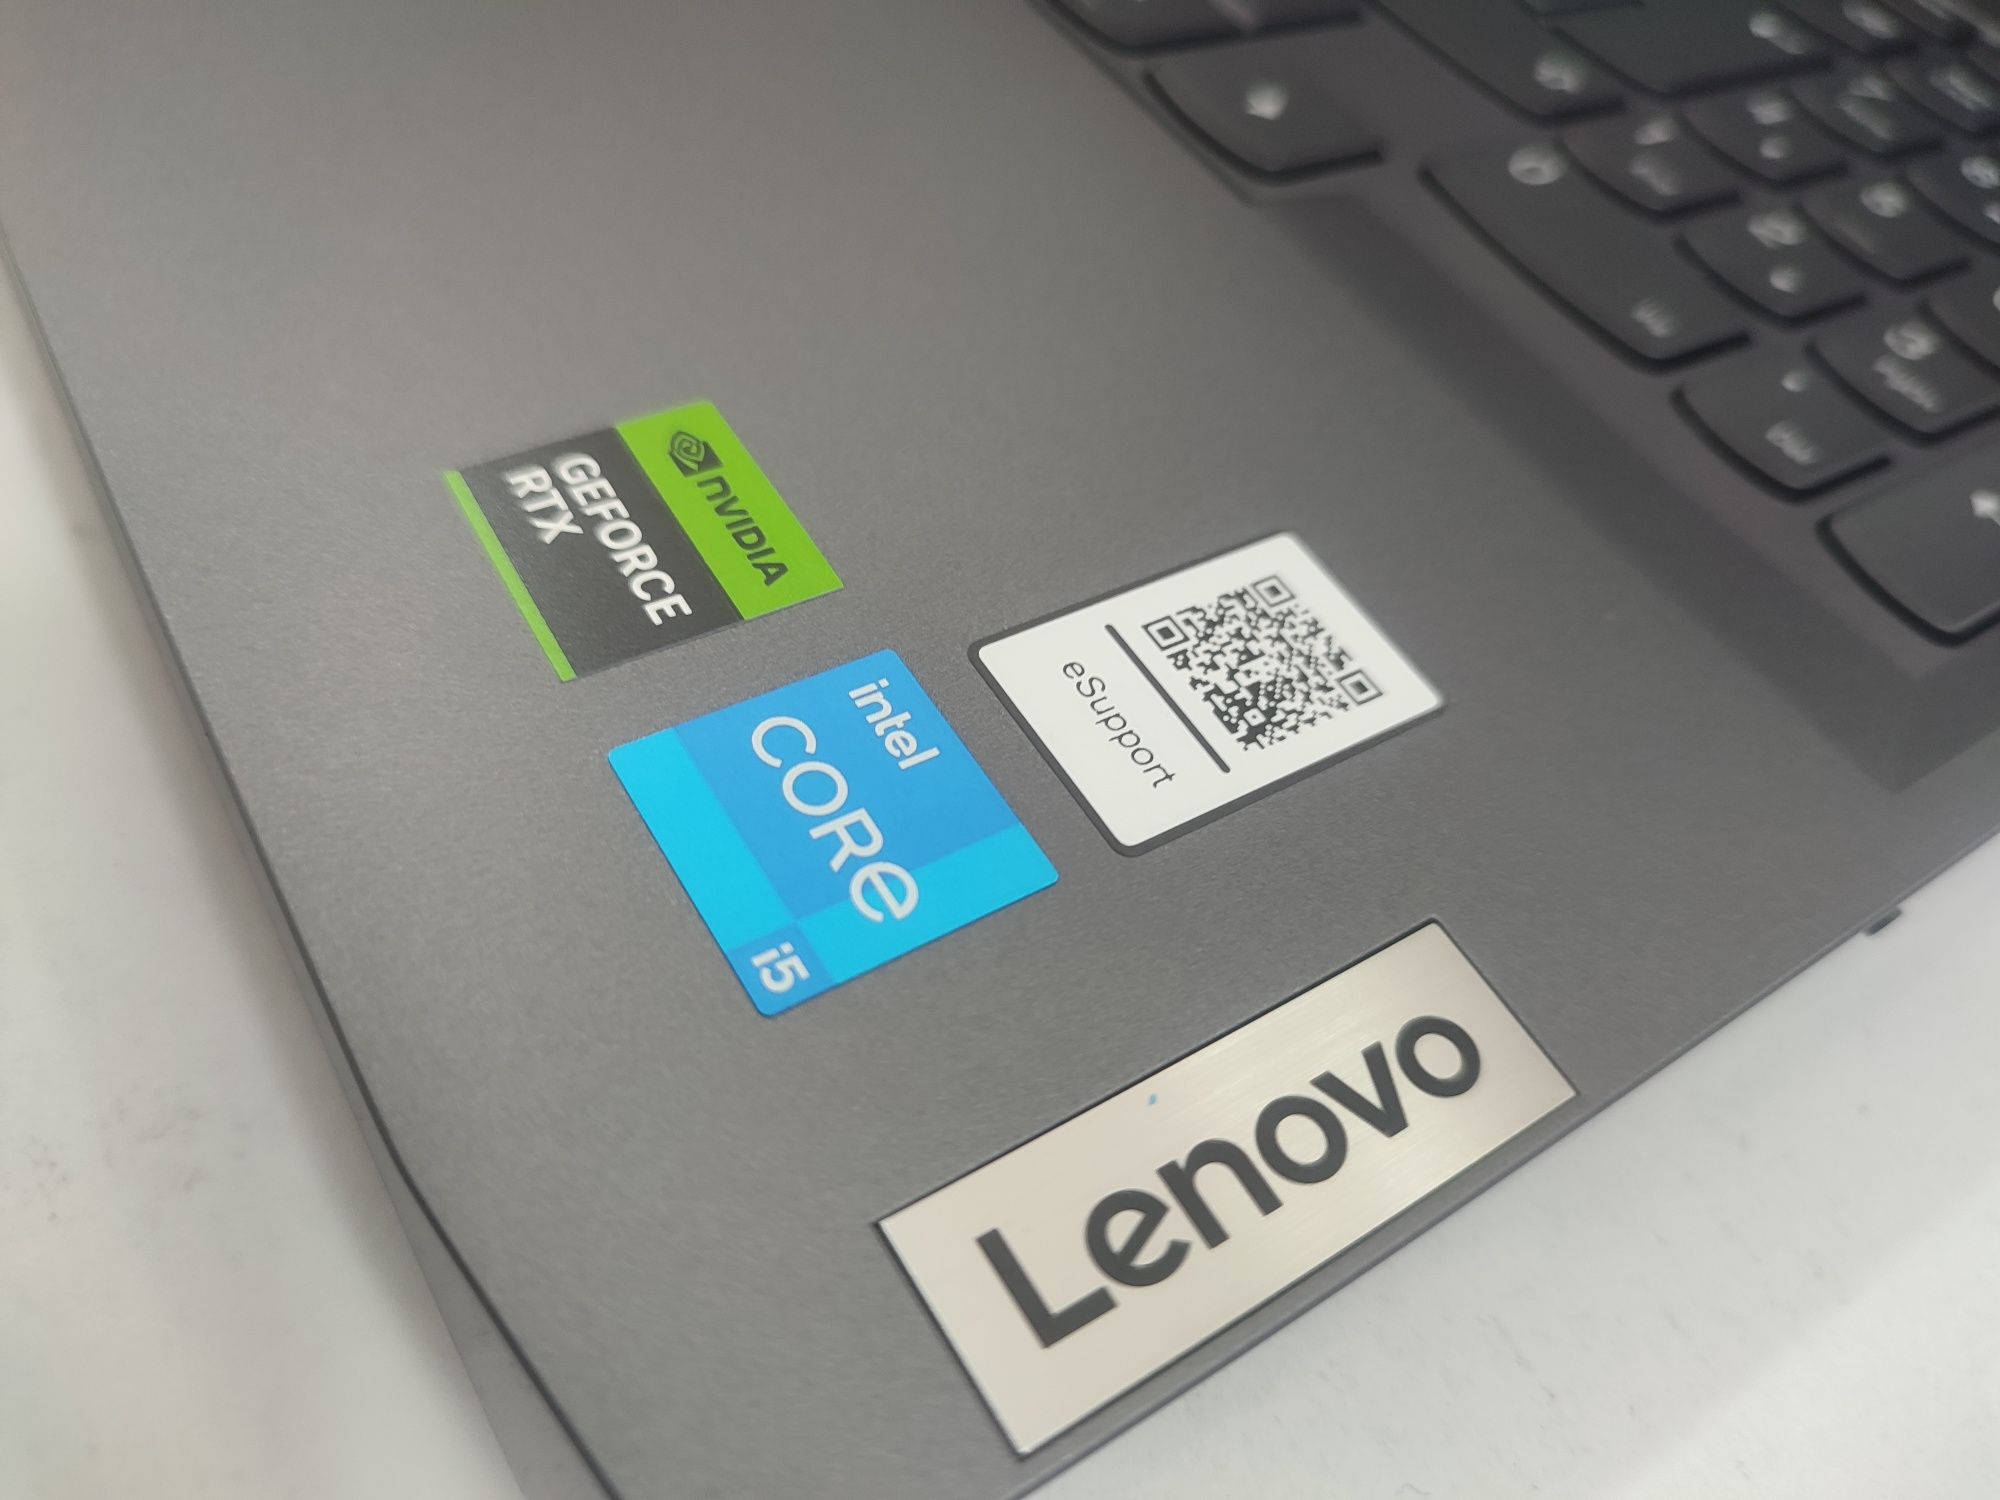 Lenovo loq gaming RTX 3050 6 gb videokartalik yangi